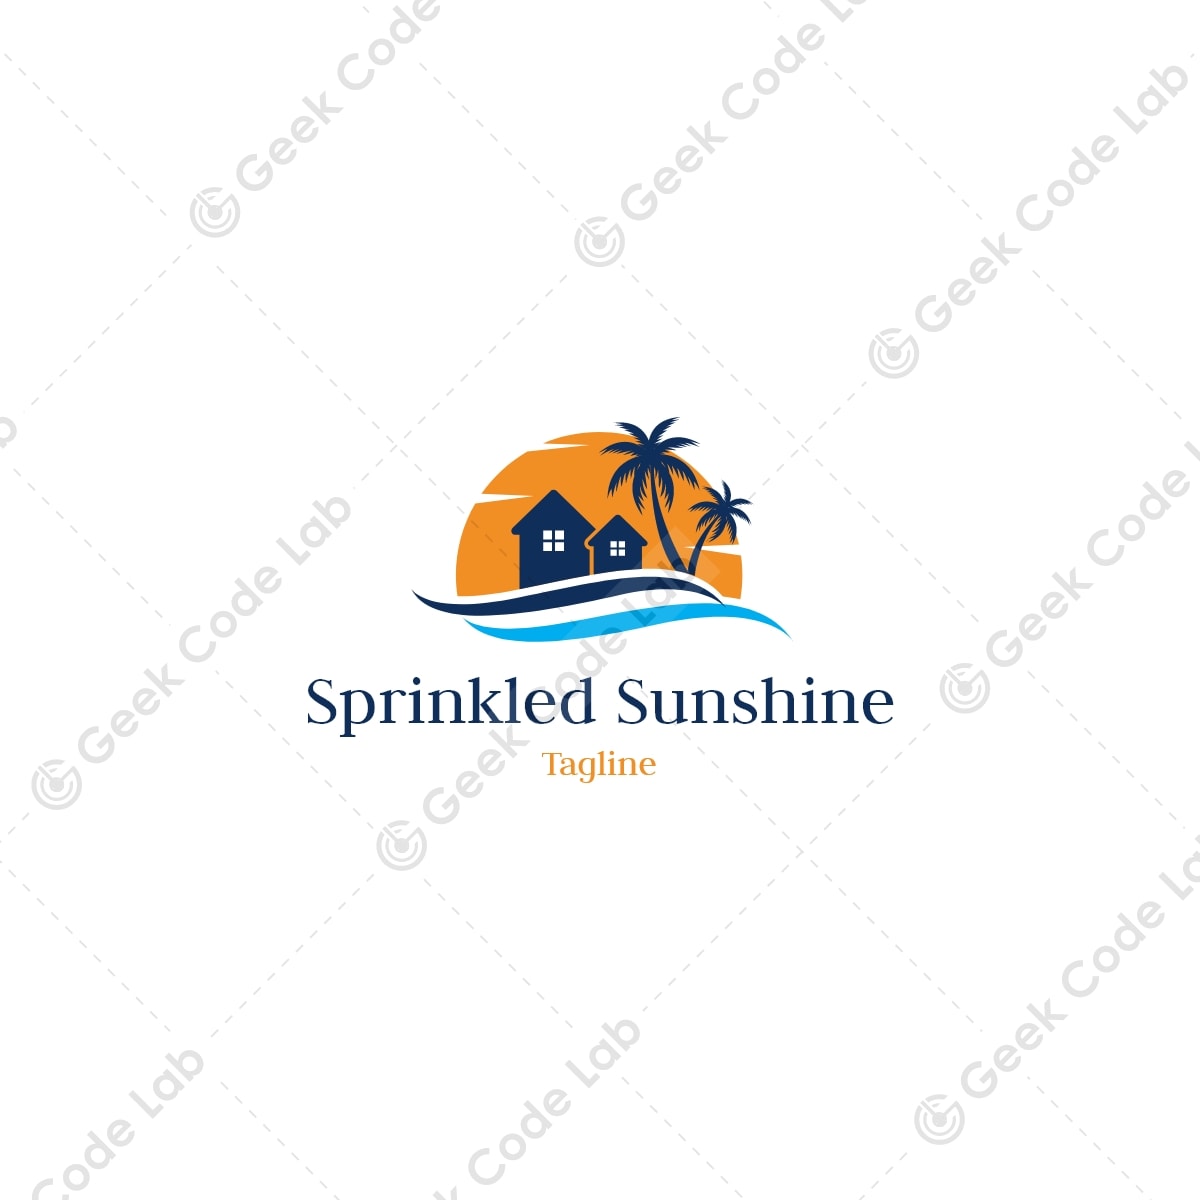 Sprinkled Sunshine